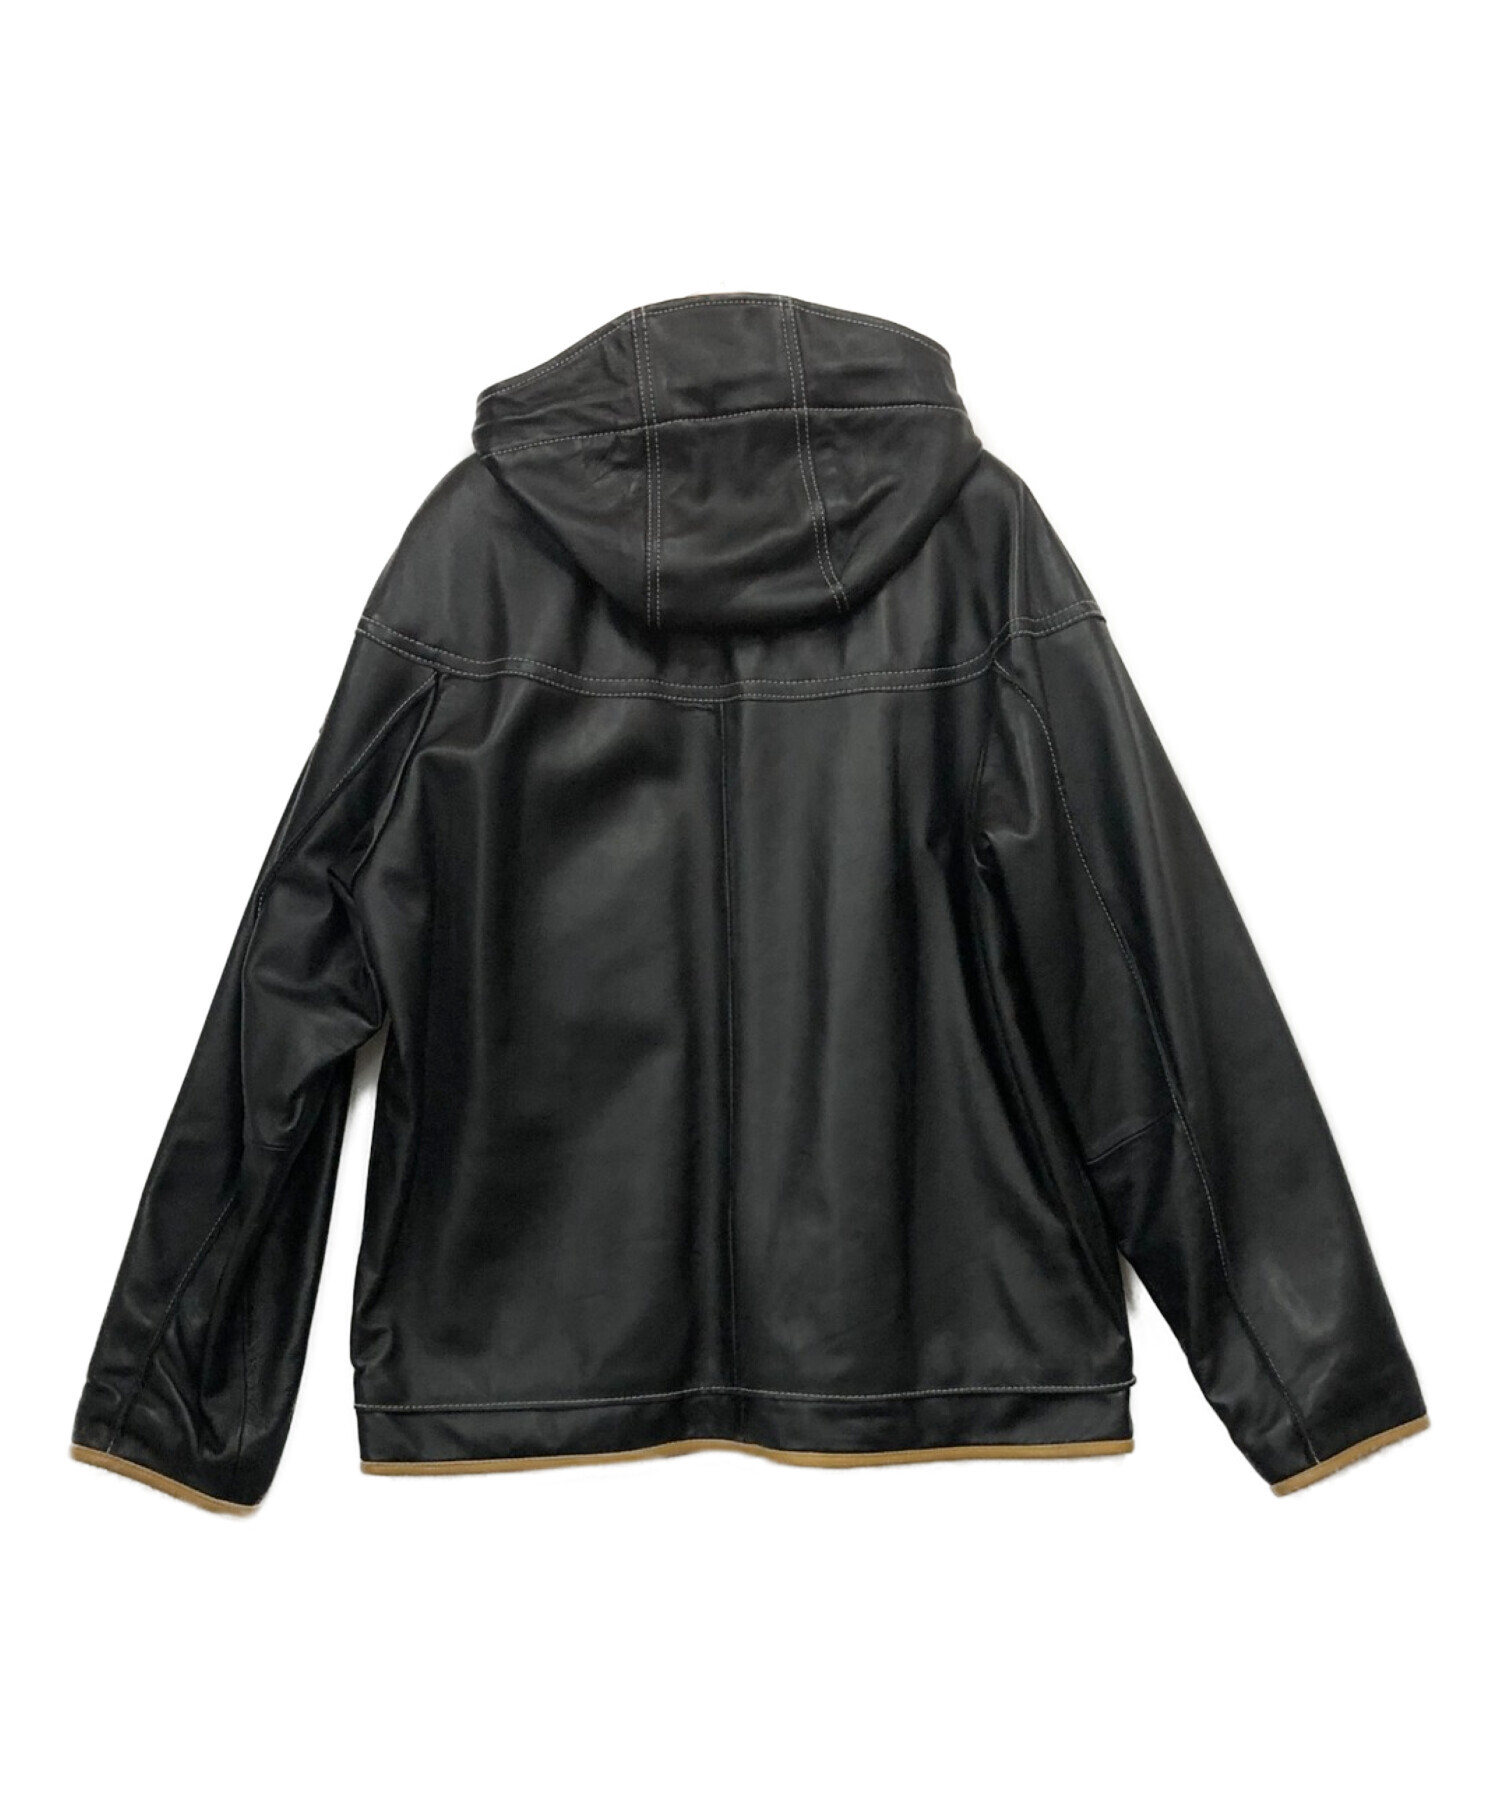 LUPO DI MARE SINA COVA (ルポ ディ マーレ シナコバ) レザーフーデッドジャケット ブラック サイズ:M